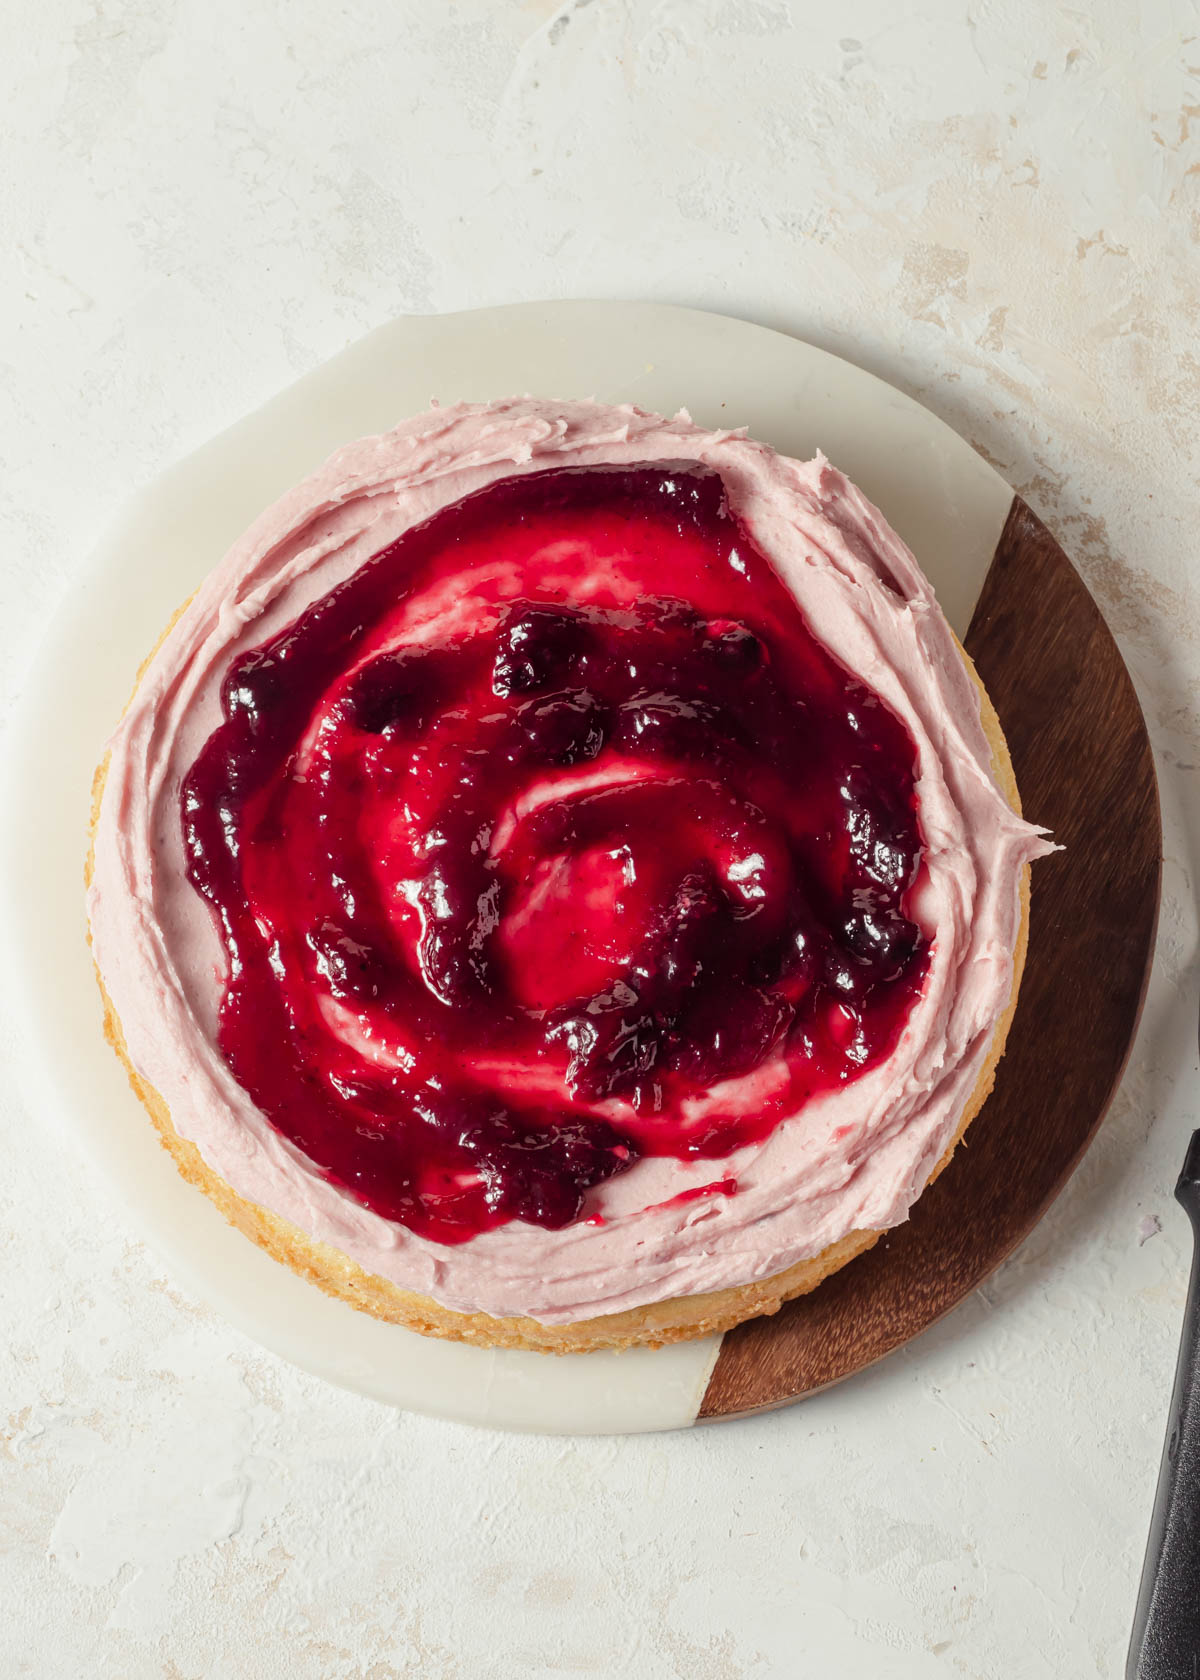 Raspberries jam swirled on top of a cake 